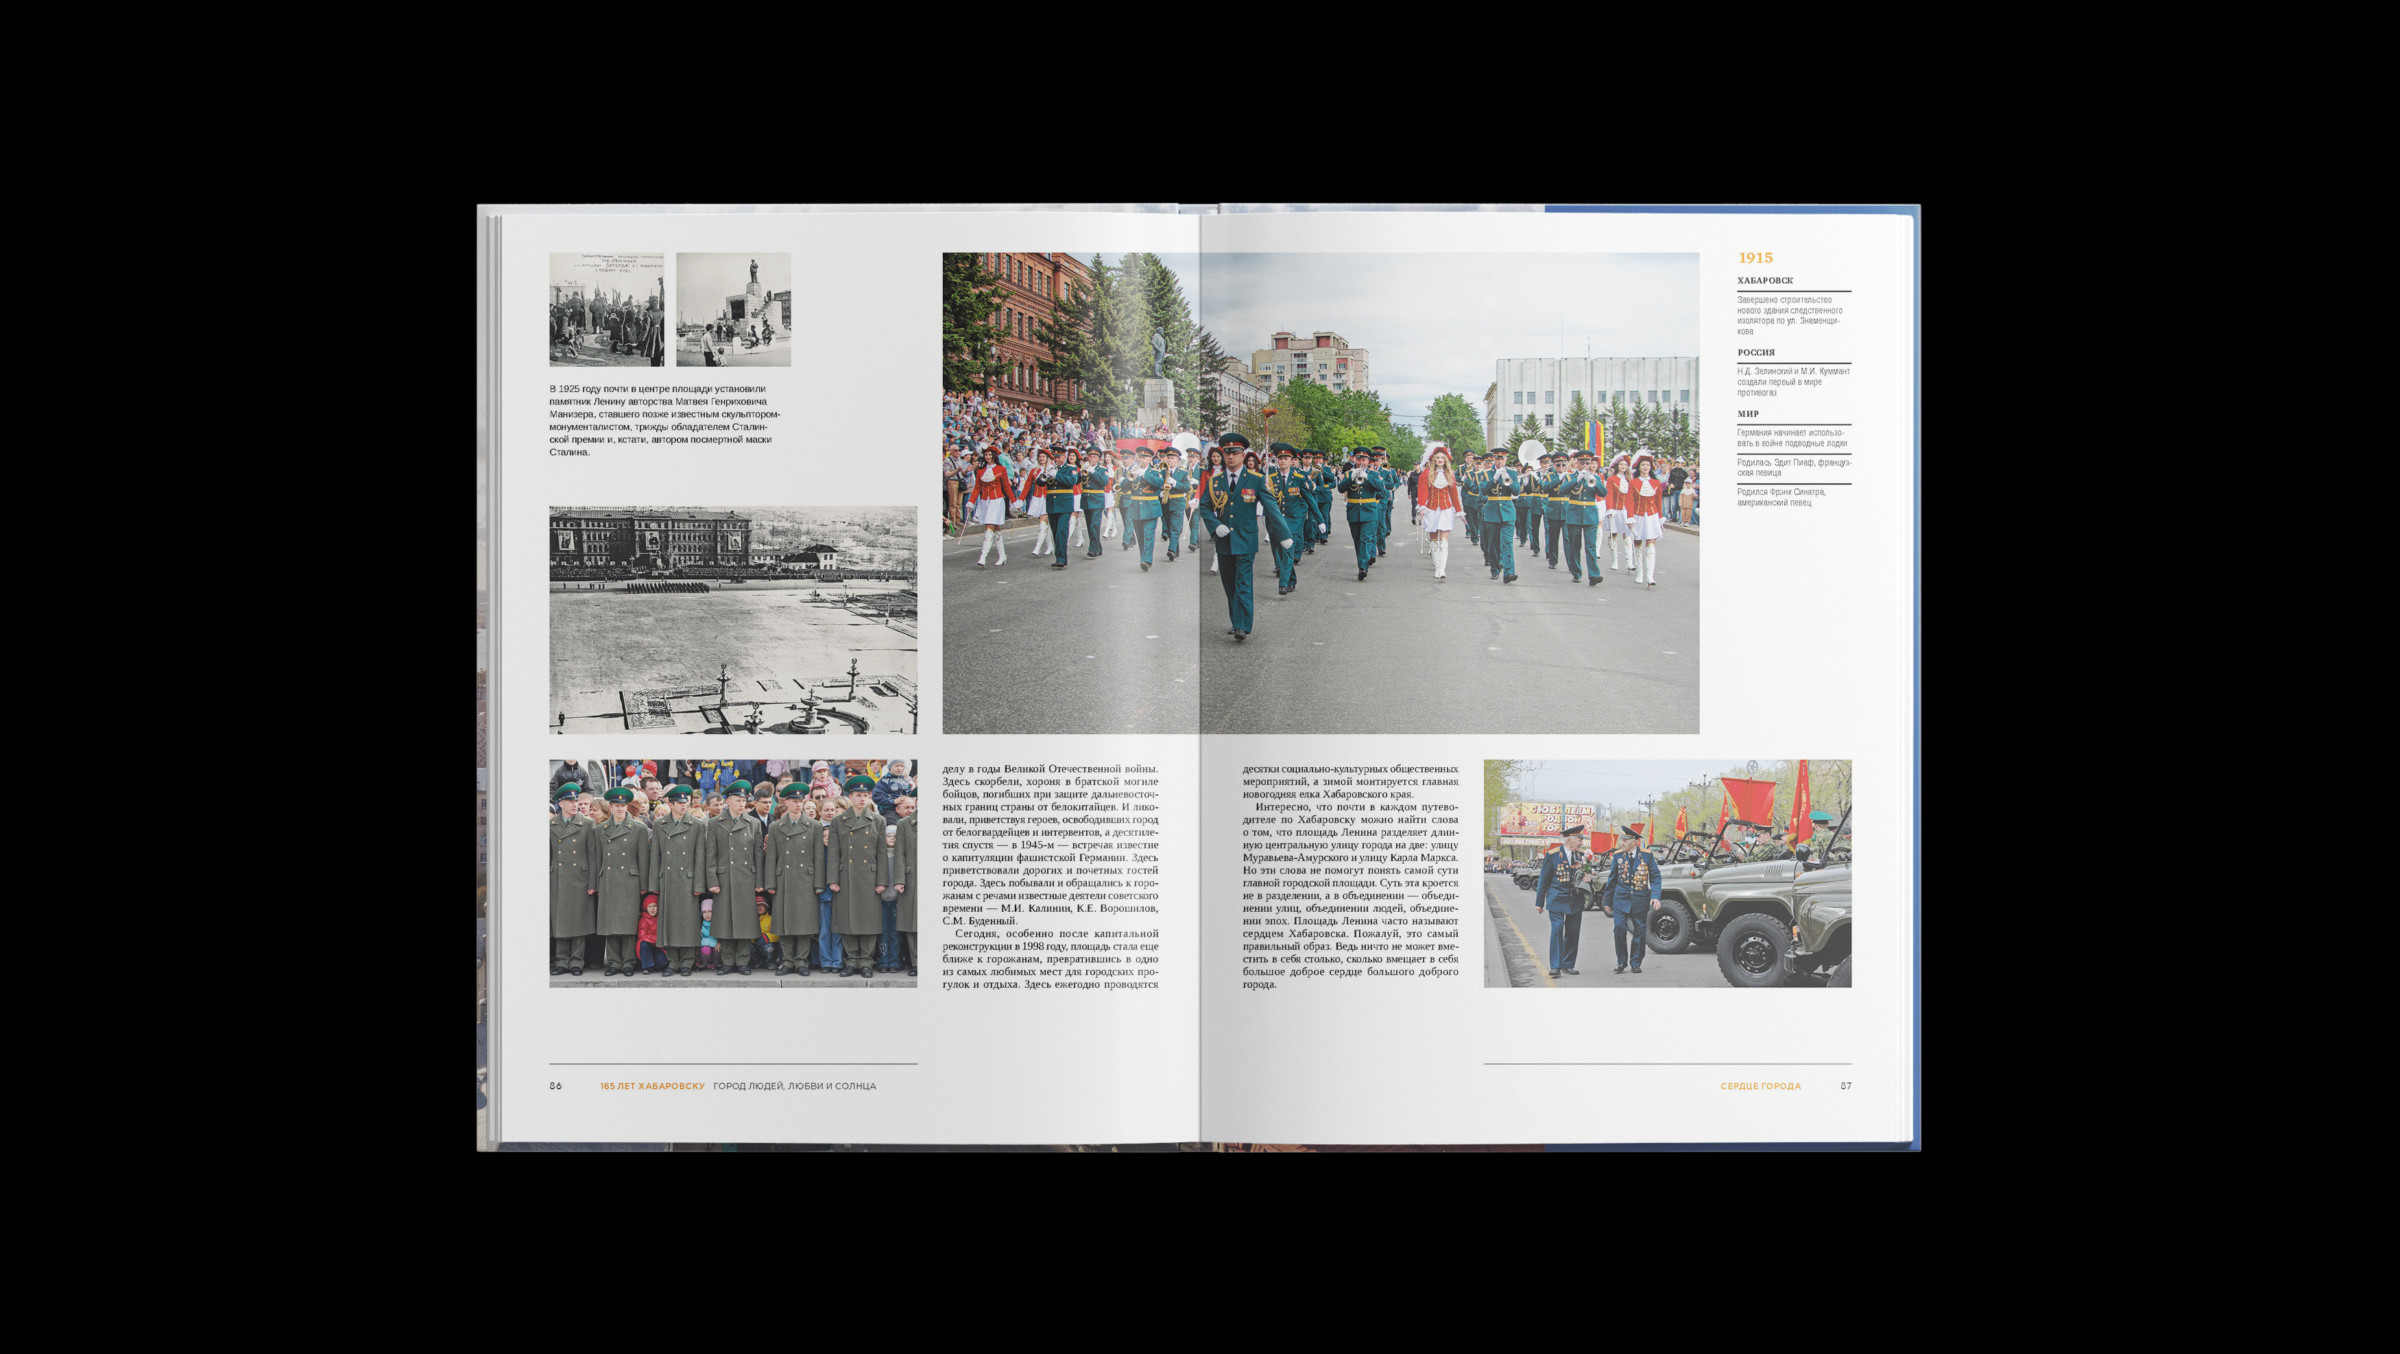 фото военных парадов в Хабаровске вошло в дизайн юбилейной книги про Хабаровск. На одном развороте книги оформили фотографии военных парадов разных лет